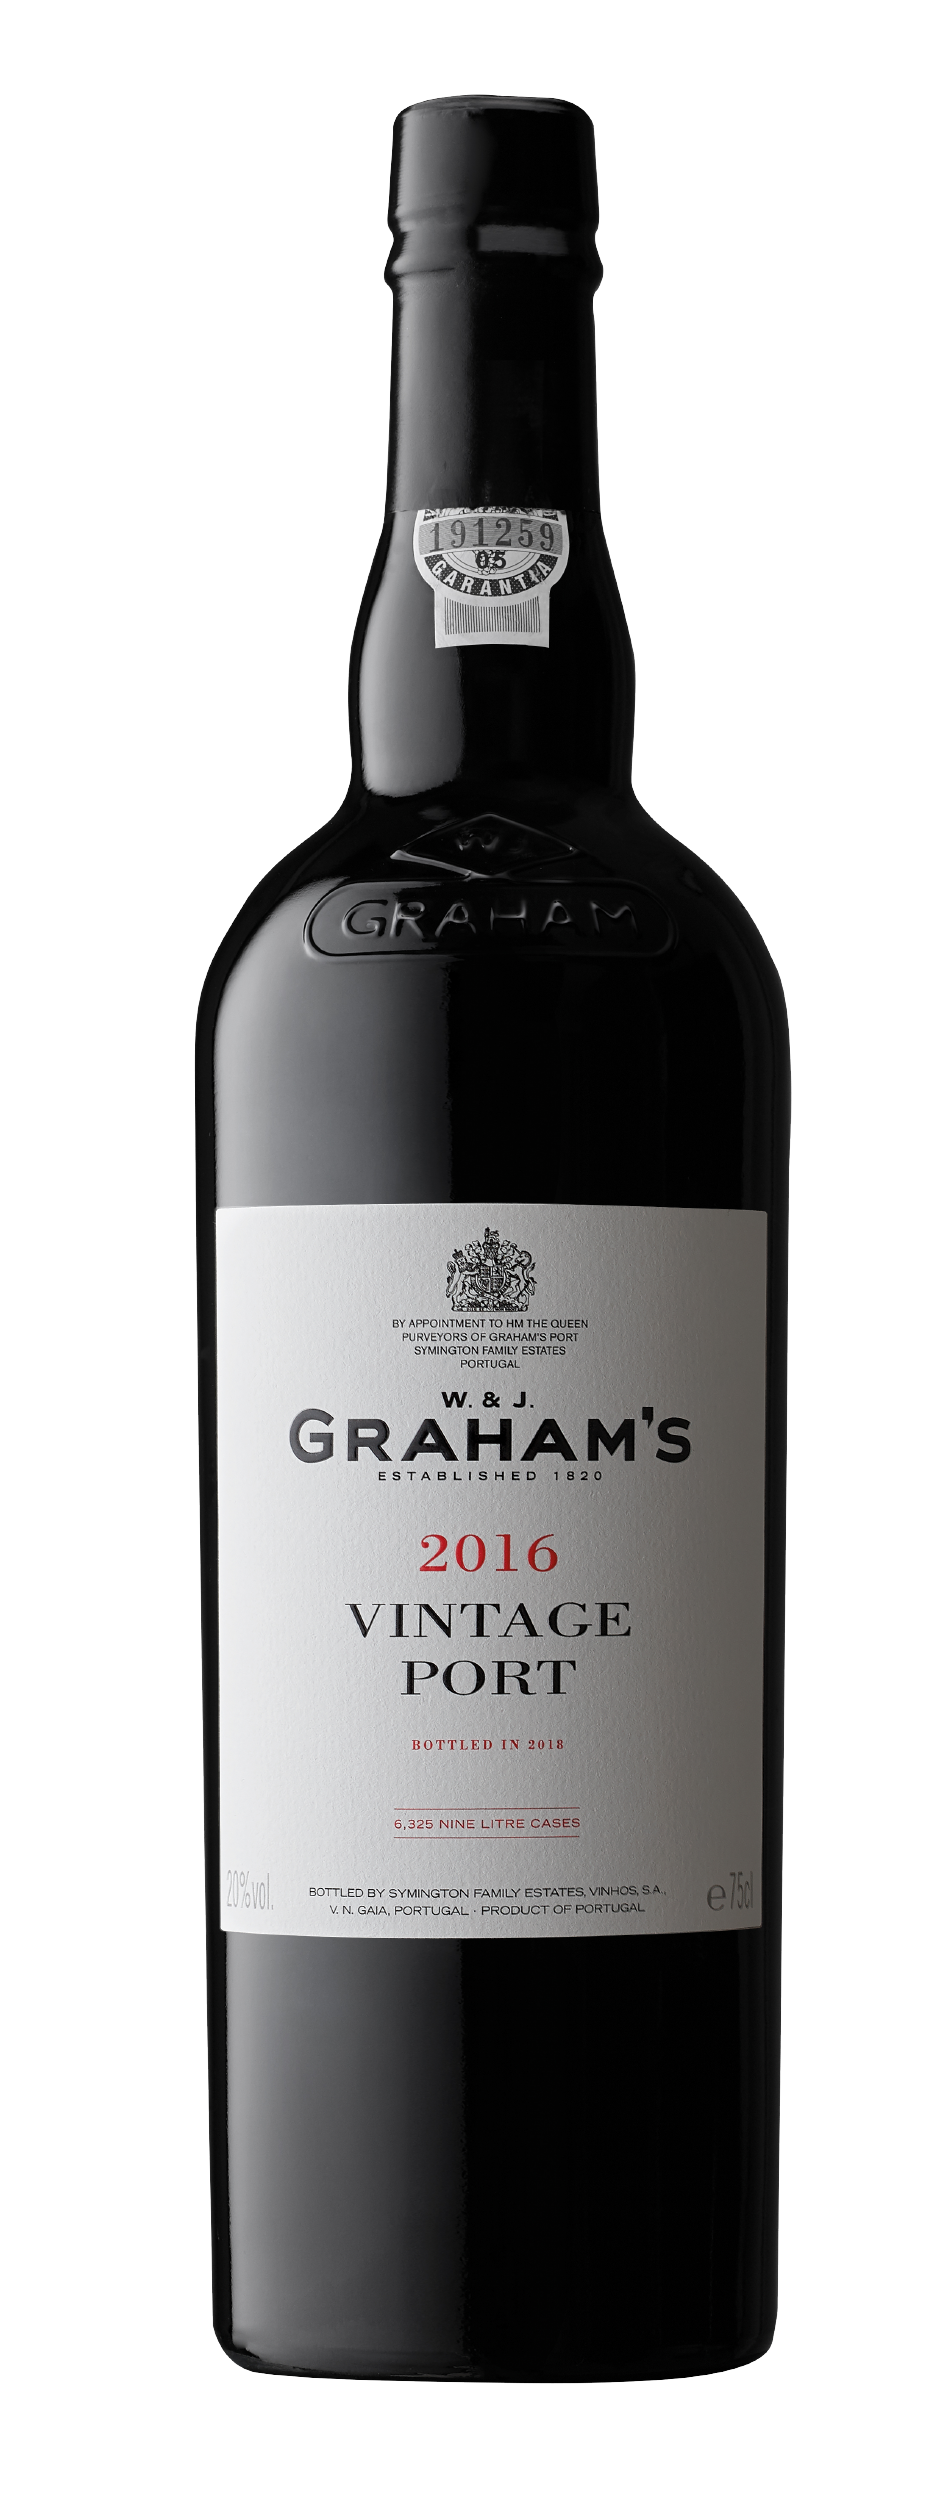 Product Image for GRAHAM'S VINTAGE PORT 2016 - MAGNUM (1.5L)